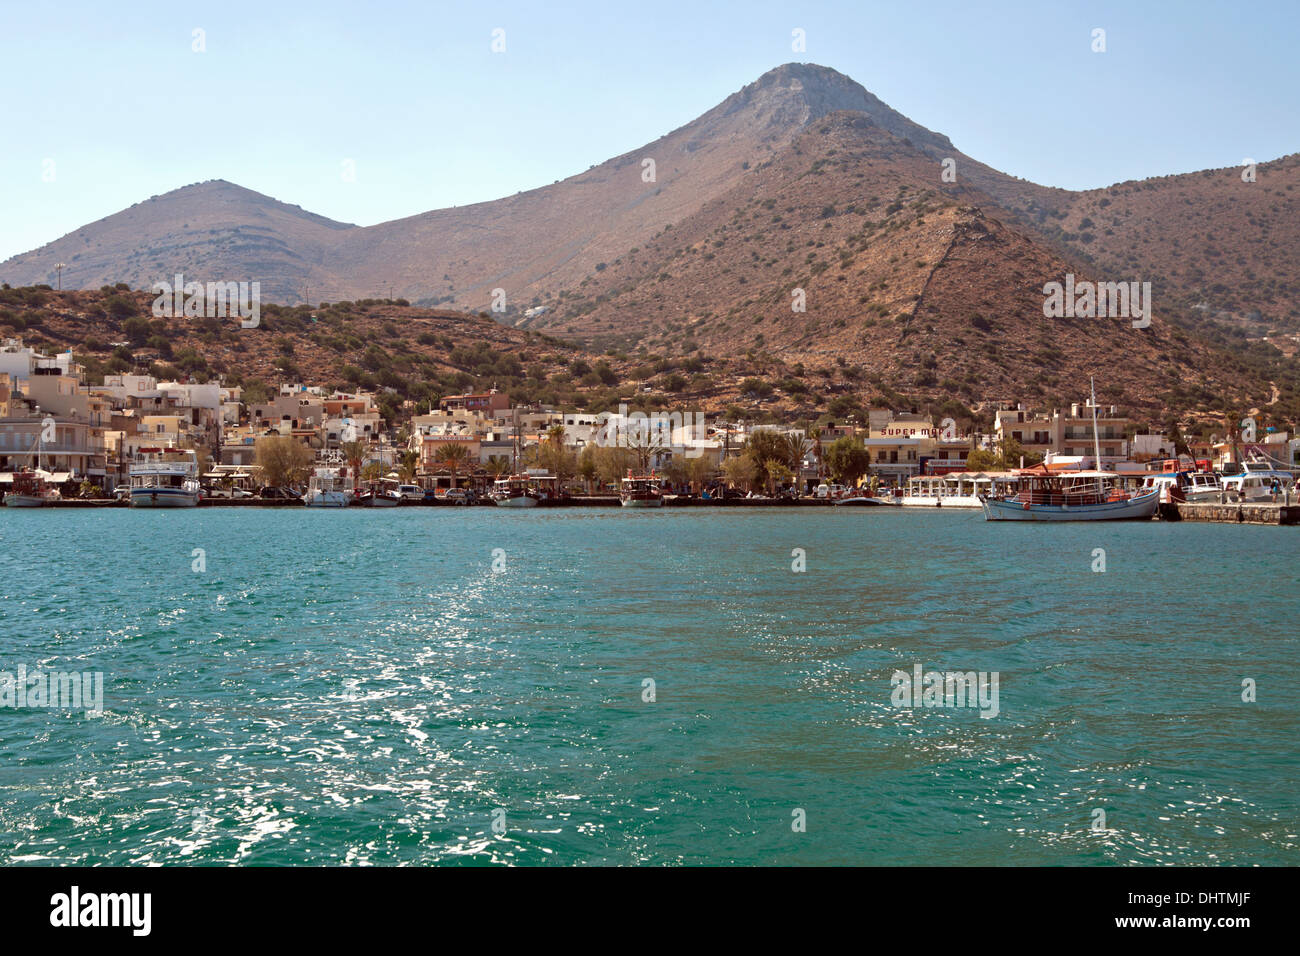 Vista in Elounda, dal golfo di Elounda, parte del comune di Agios Nikolaos, Creta, Grecia, l'Europa. Foto Stock